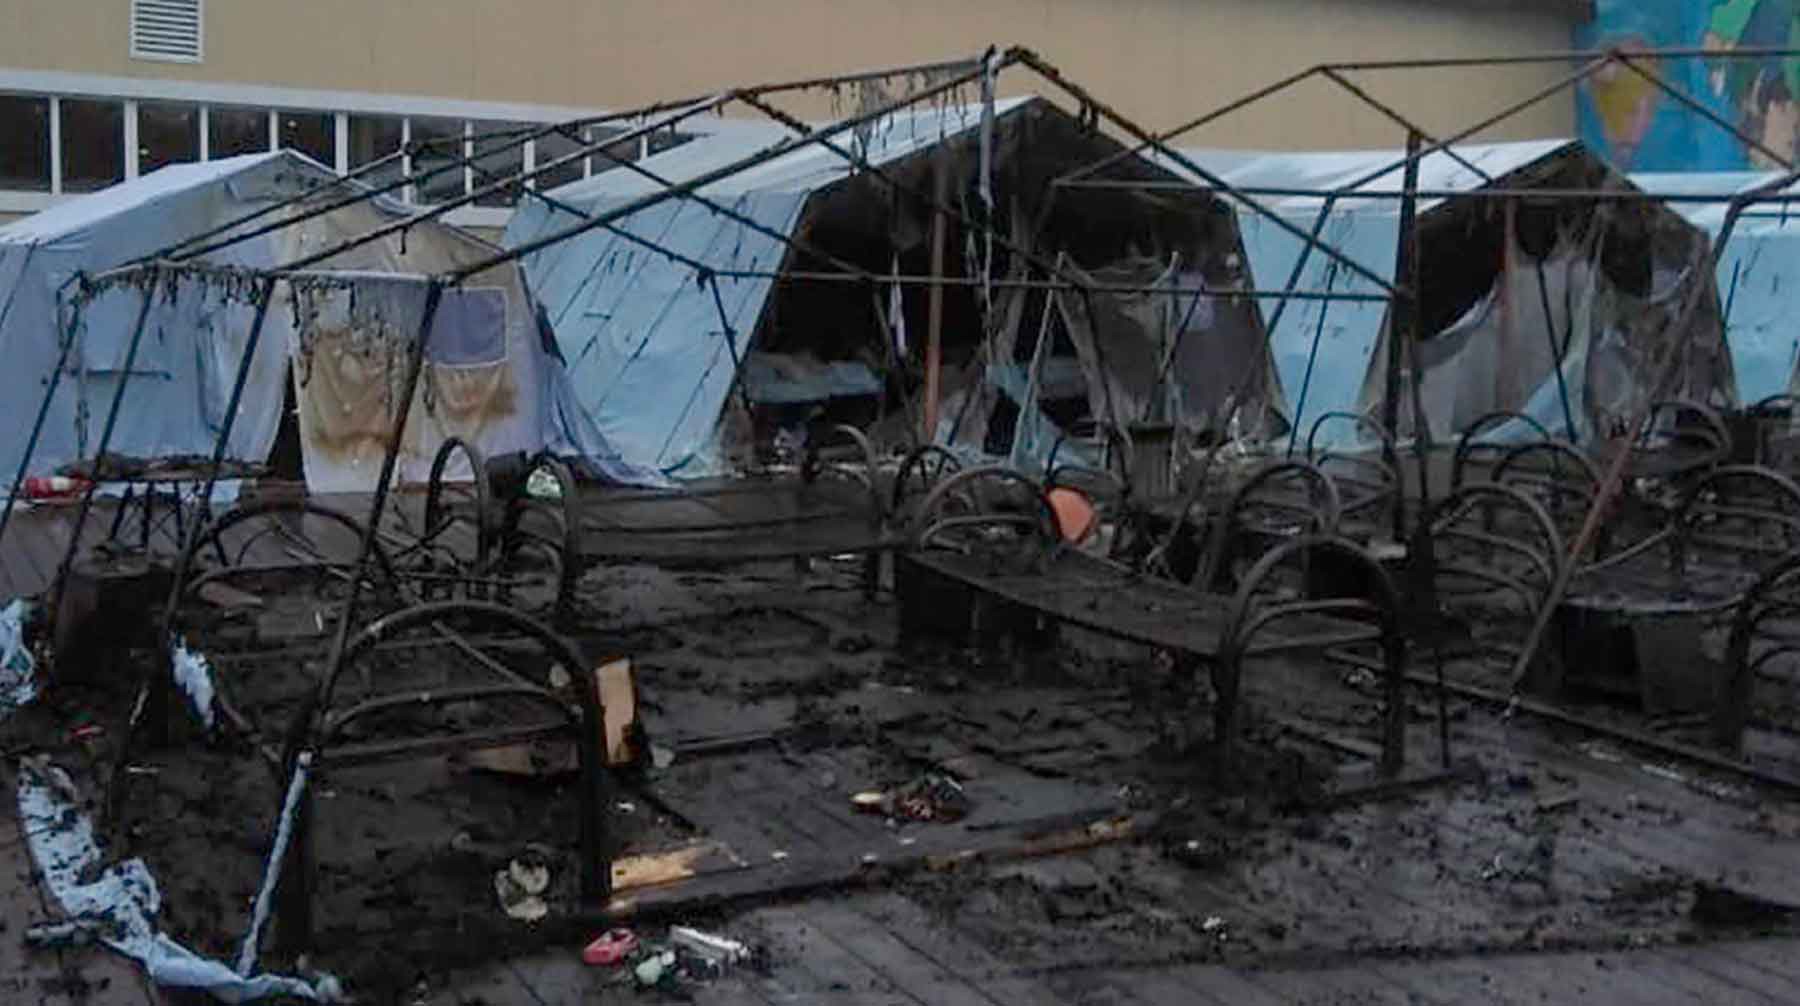 Dailystorm - Три ребенка, пострадавших при пожаре в лагере под Хабаровском, находятся в коме